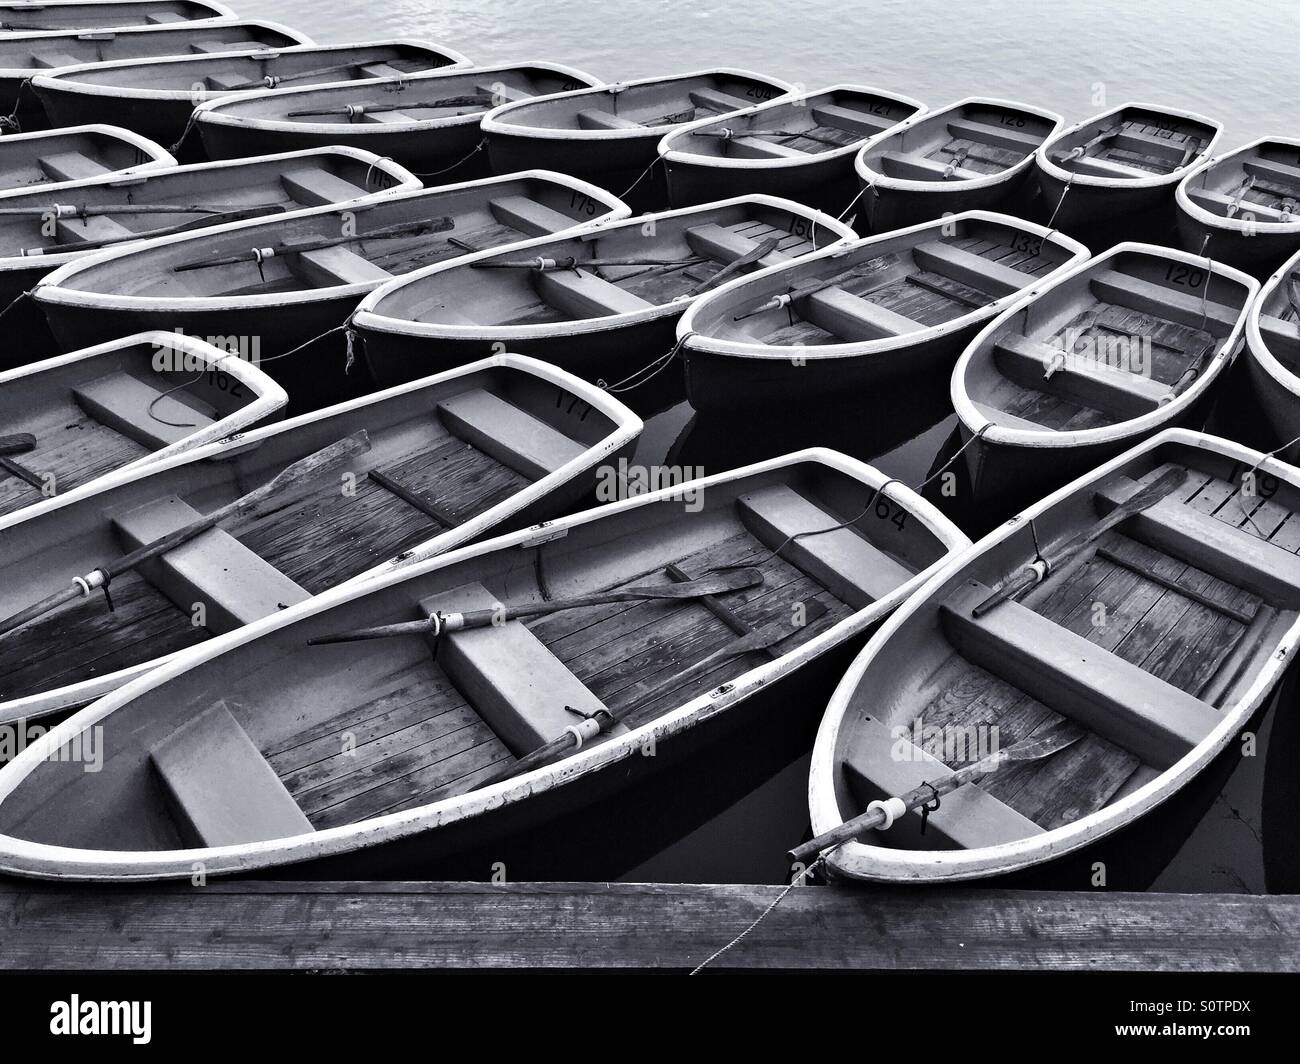 Paddle boats for rental at Arashiyama river,Kyoto Japan Stock Photo